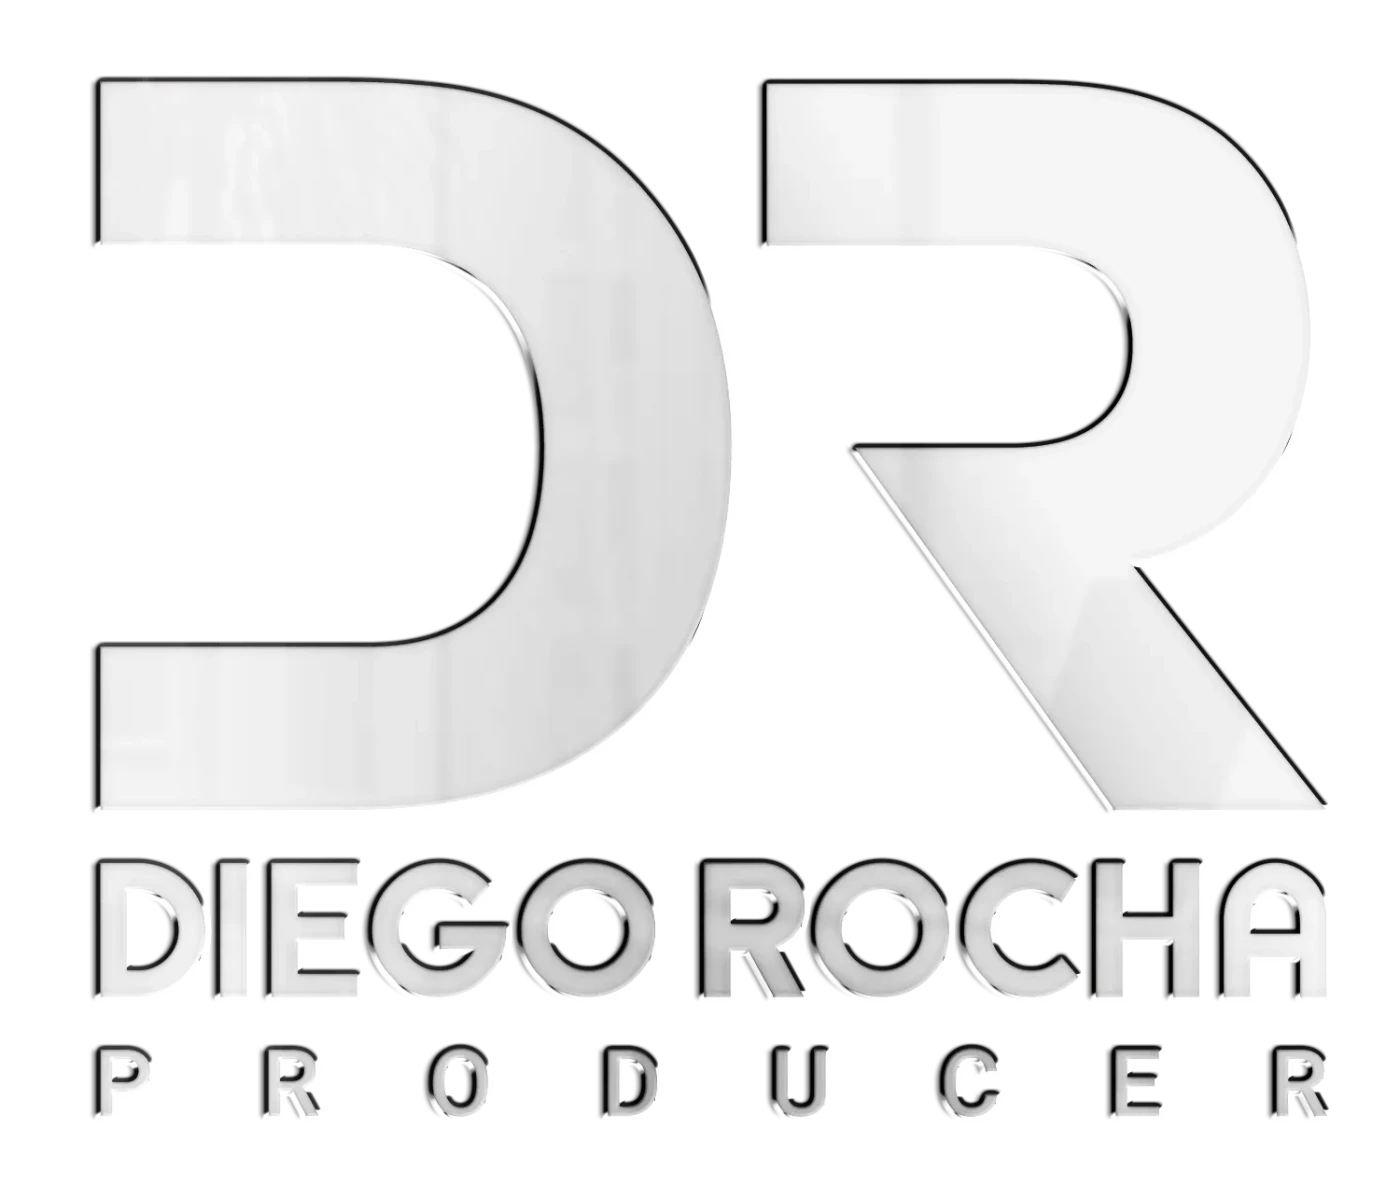 Diego Rocha